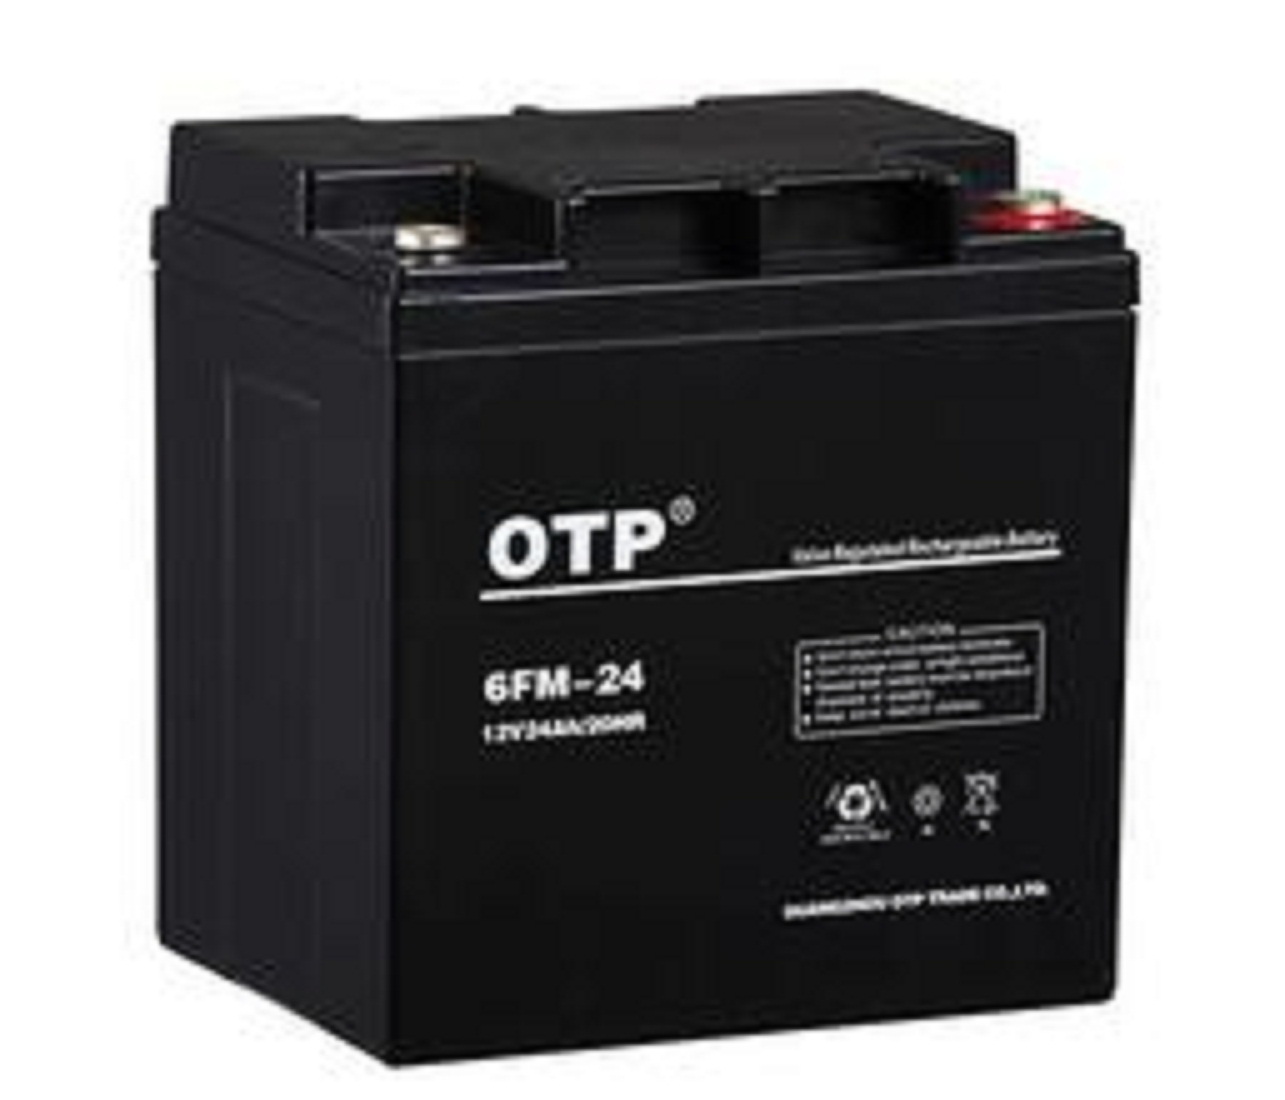 供应广东OTP12v200ah蓄电池6FM-200铅酸免维护阀控式UPS专用现货 欧托匹,6FM-200,OTP,铅酸免维护电池,UPS电池